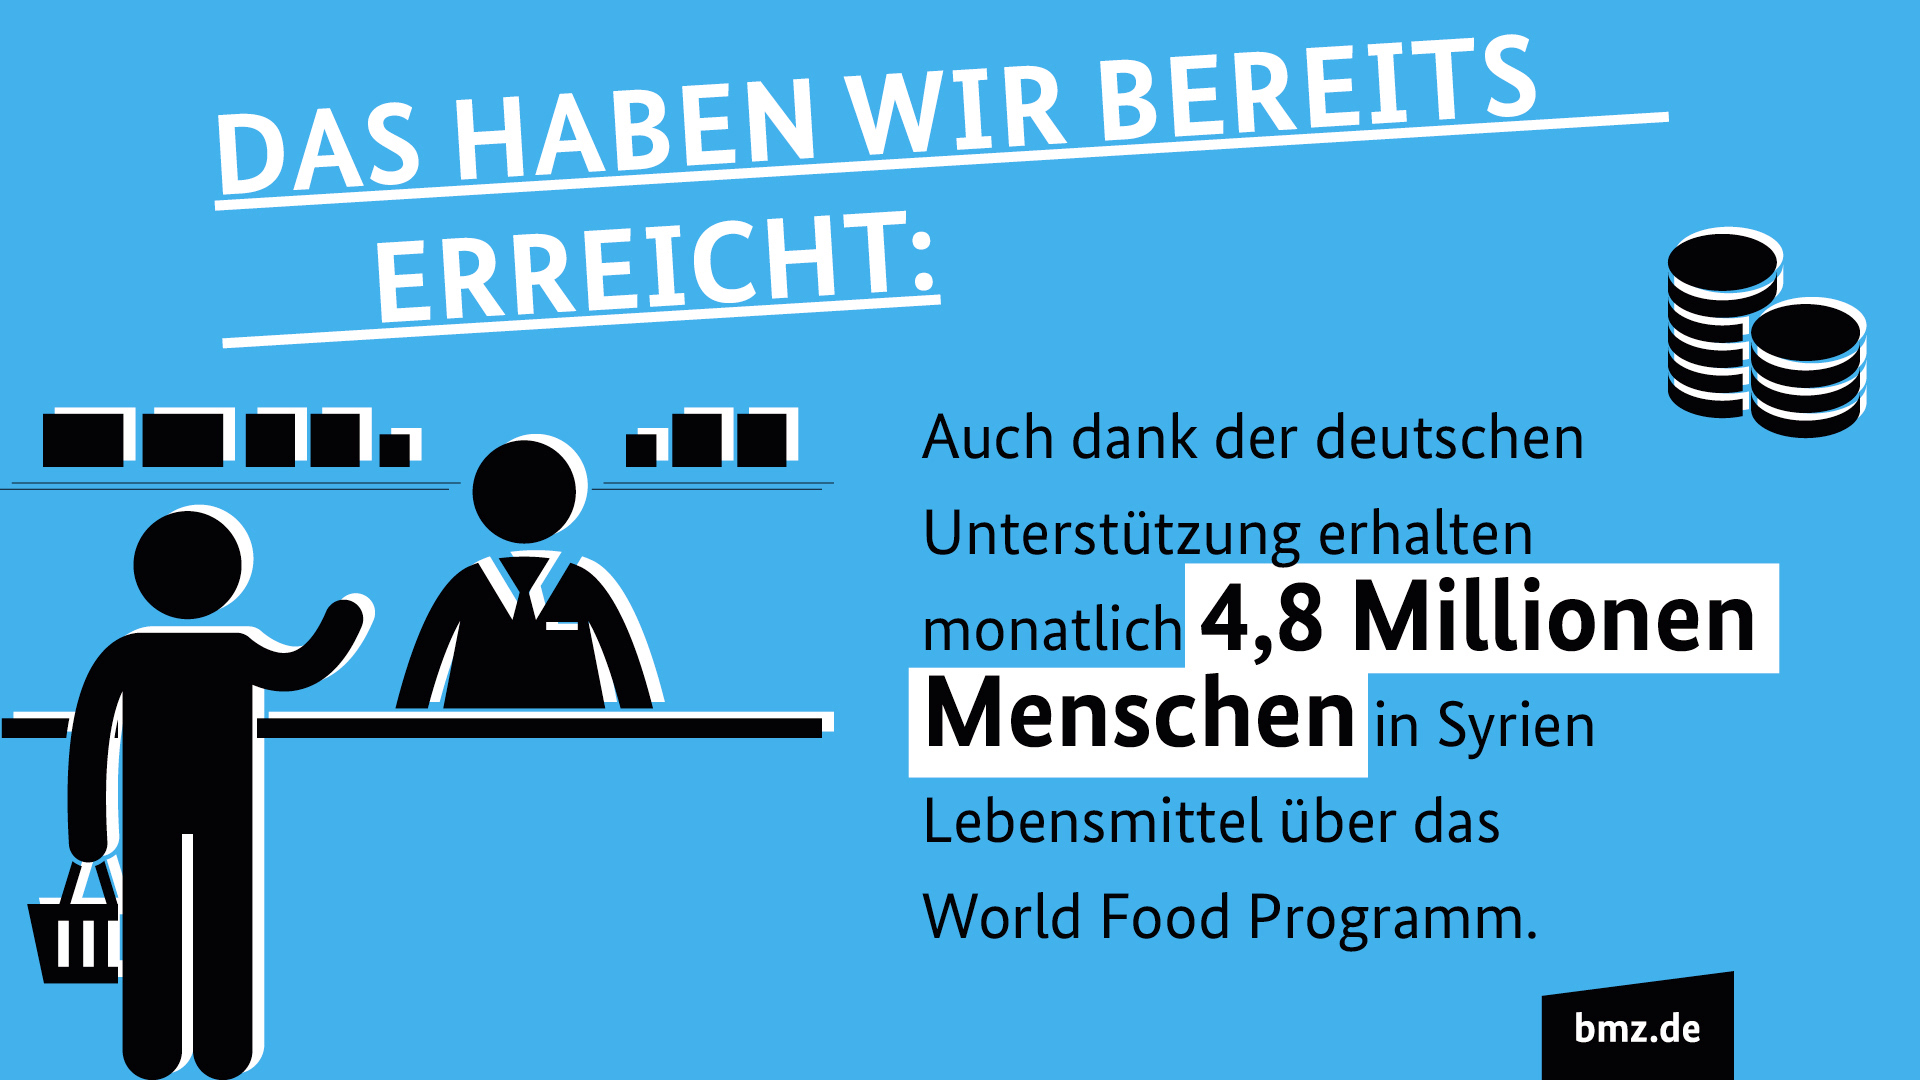 Grafik "Das haben wir bereits erreicht": Auch dank der deutschen Unterstützung erhalten monatlich 4,8 Millionen Menschen in Syrien Lebensmittel über das World Food Programm.